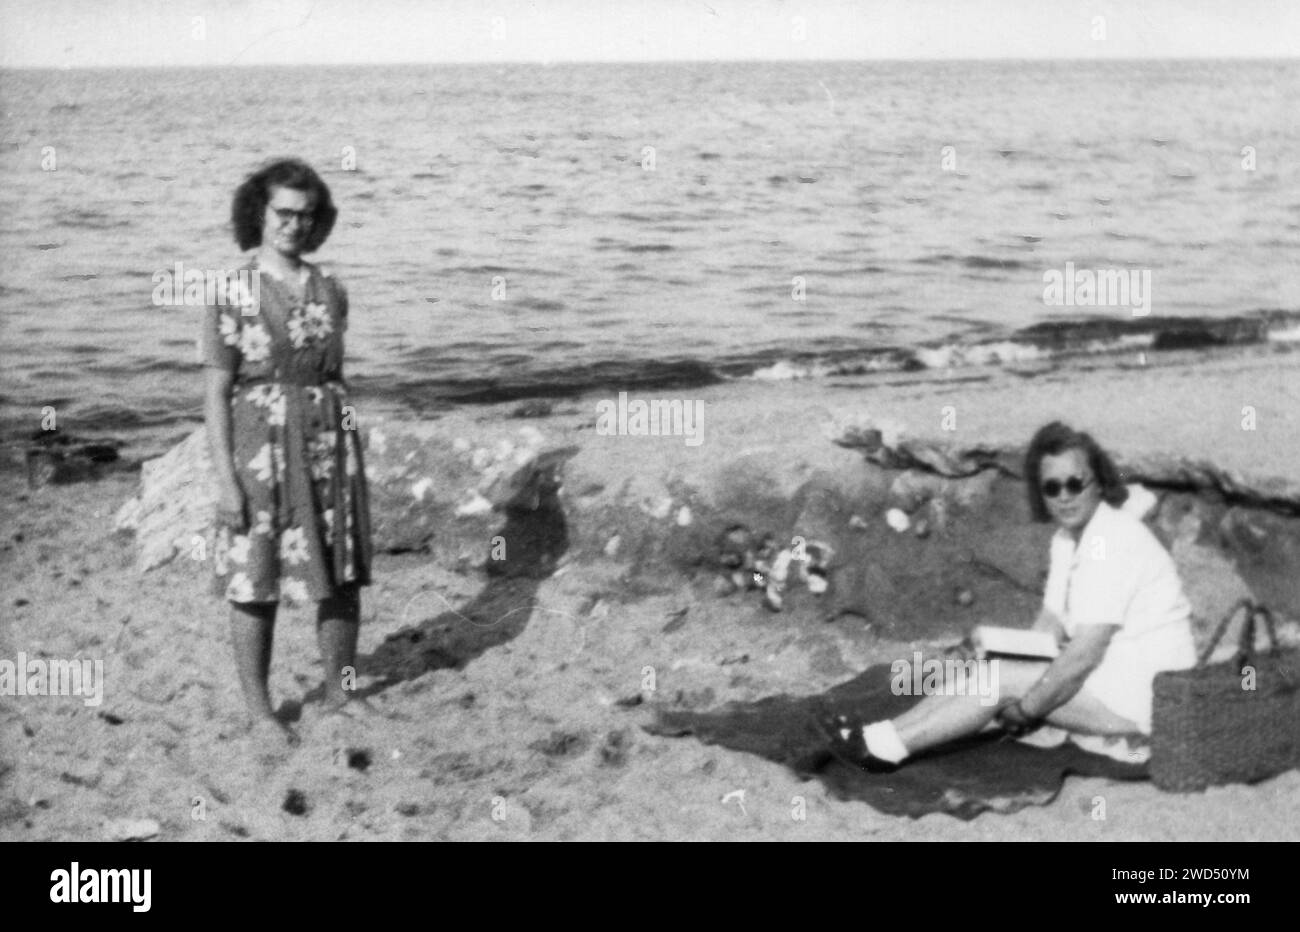 Ein antikes Foto zeigt zwei kaukasische Frauen am Strand am Meer. Deutschland. Datum unbekannt, um die 1950er Jahre Stockfoto